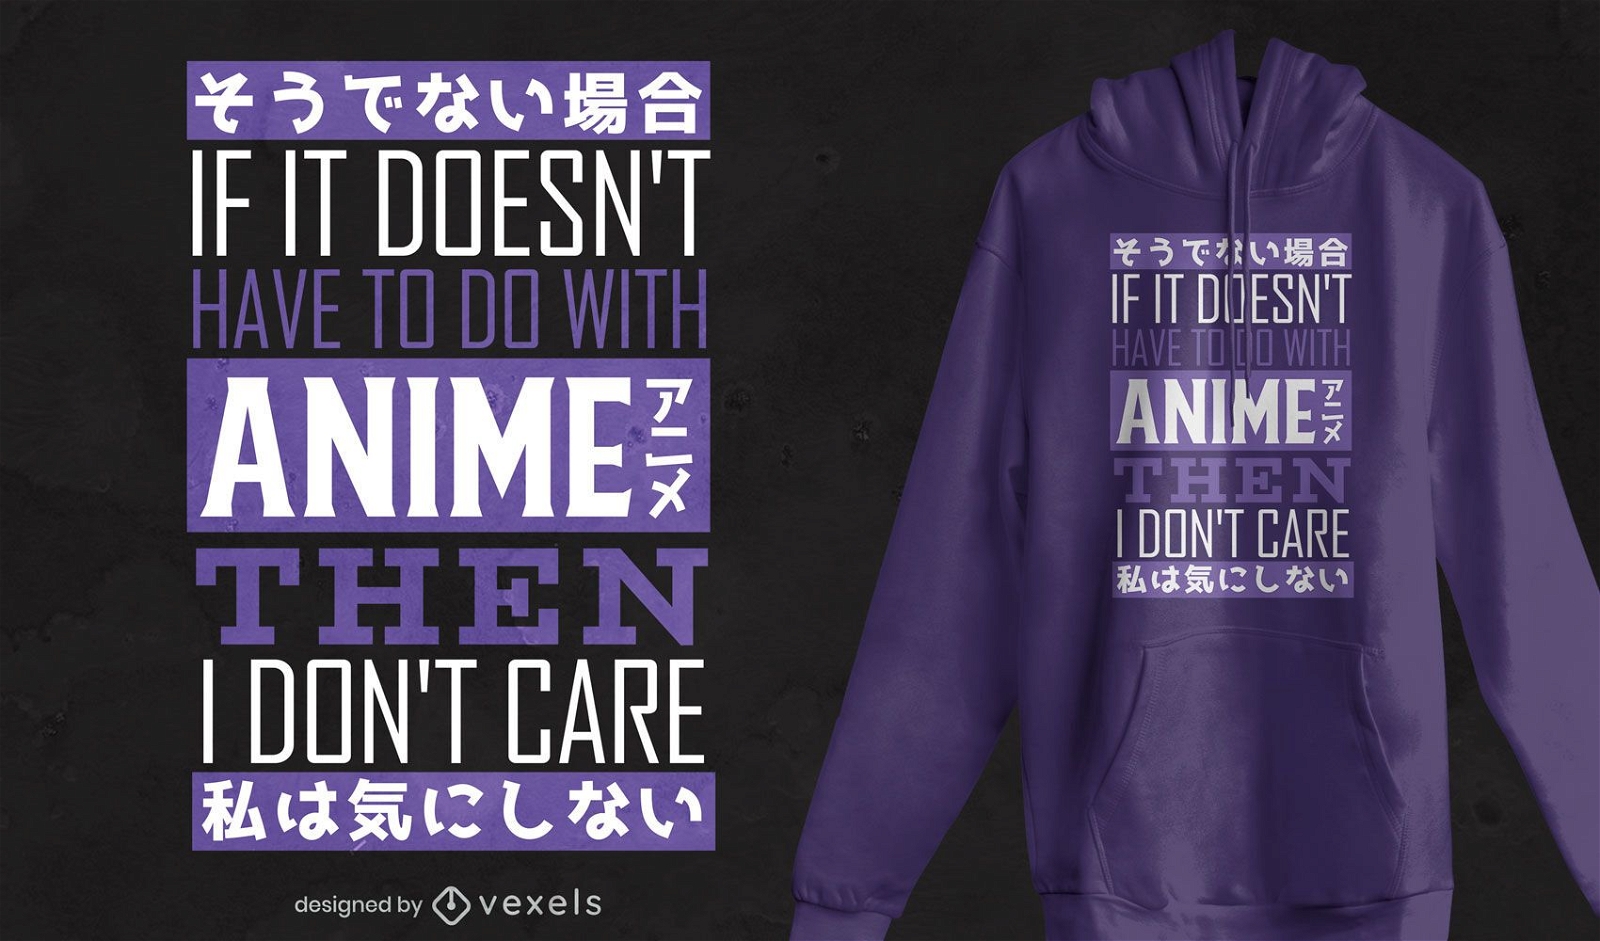 Preocupo-me com o design de camisetas de anime